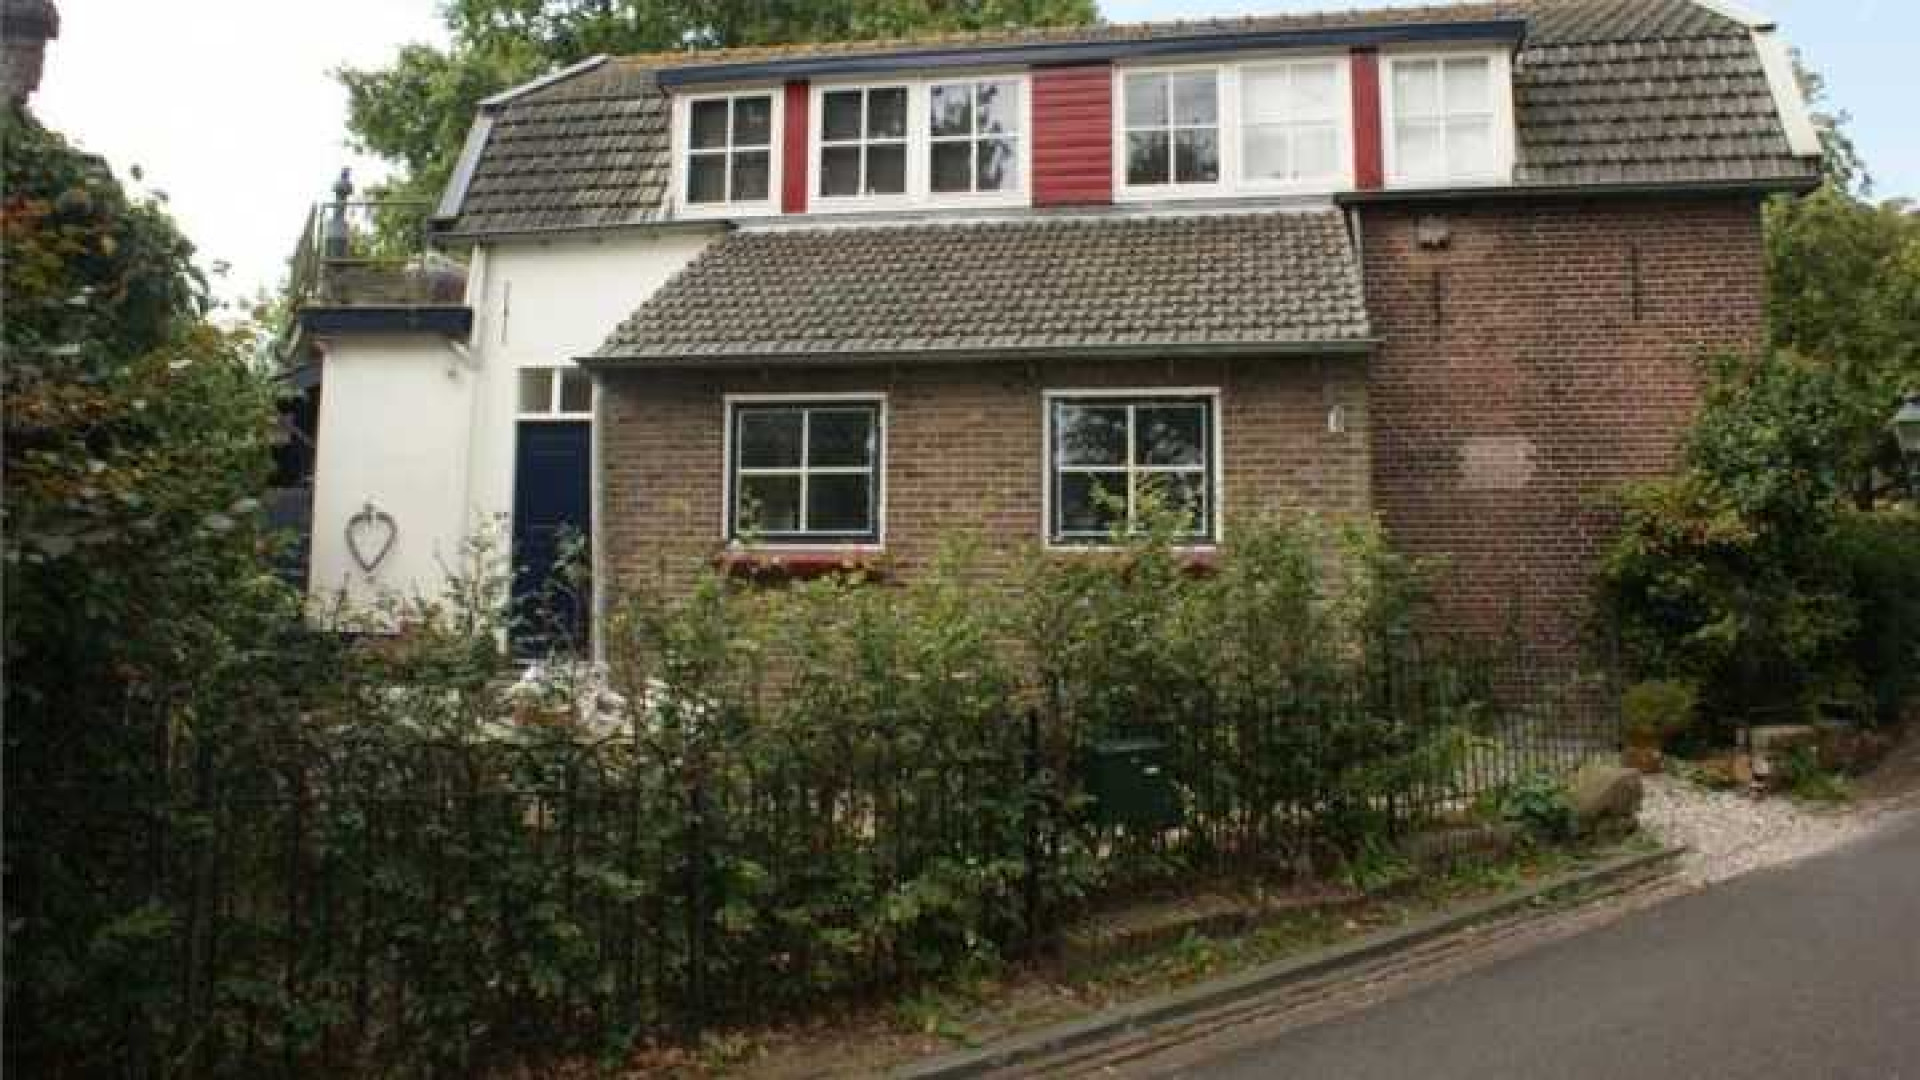 Herman van Veen haalt na eerdere prijsverlaging zijn huis uit de verkoop. Zie foto's